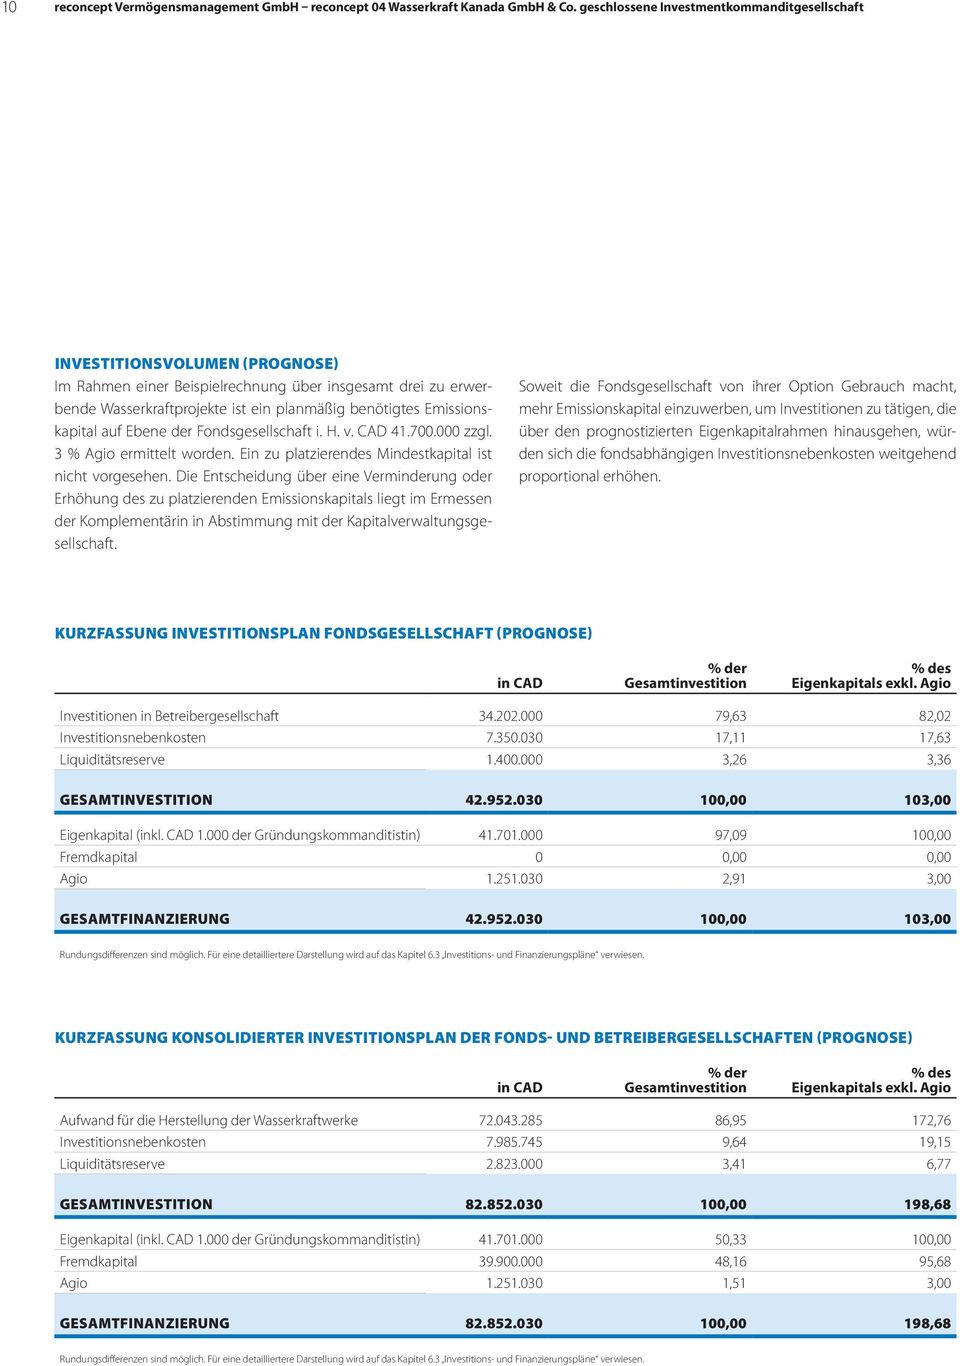 Emissionskapital auf Ebene der Fondsgesellschaft i. H. v. CAD 41.700.000 zzgl. 3 % Agio ermittelt worden. Ein zu platzierendes Mindestkapital ist nicht vorgesehen.